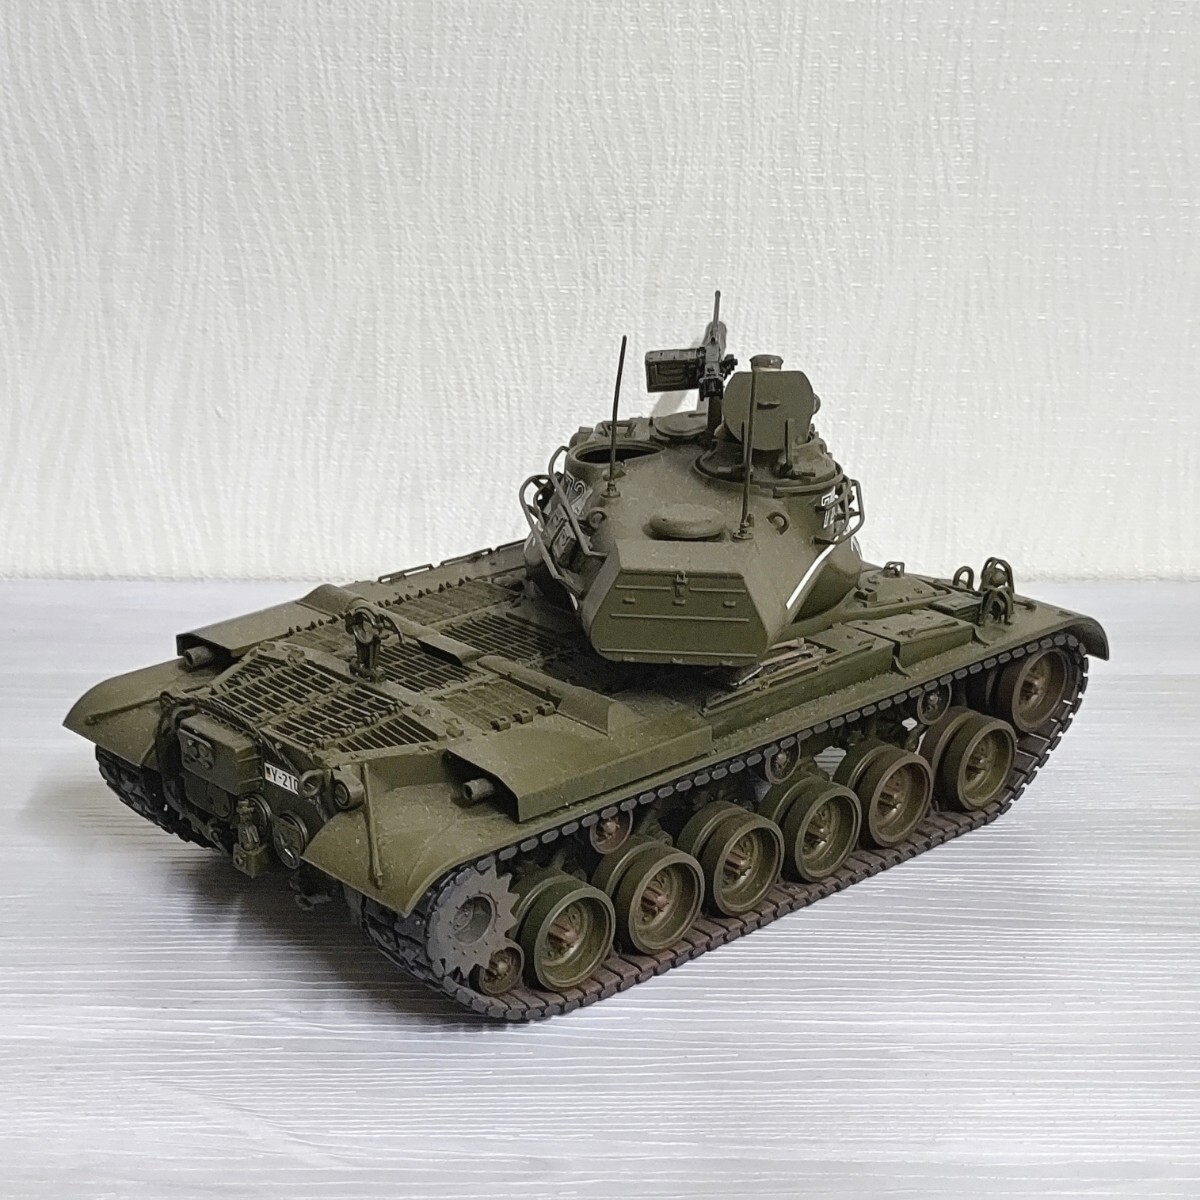 1/35 ドイツ連邦軍 M47 パットン プラモデル 完成品 第二次世界大戦 戦車 ドイツ軍 塗装済み_画像4